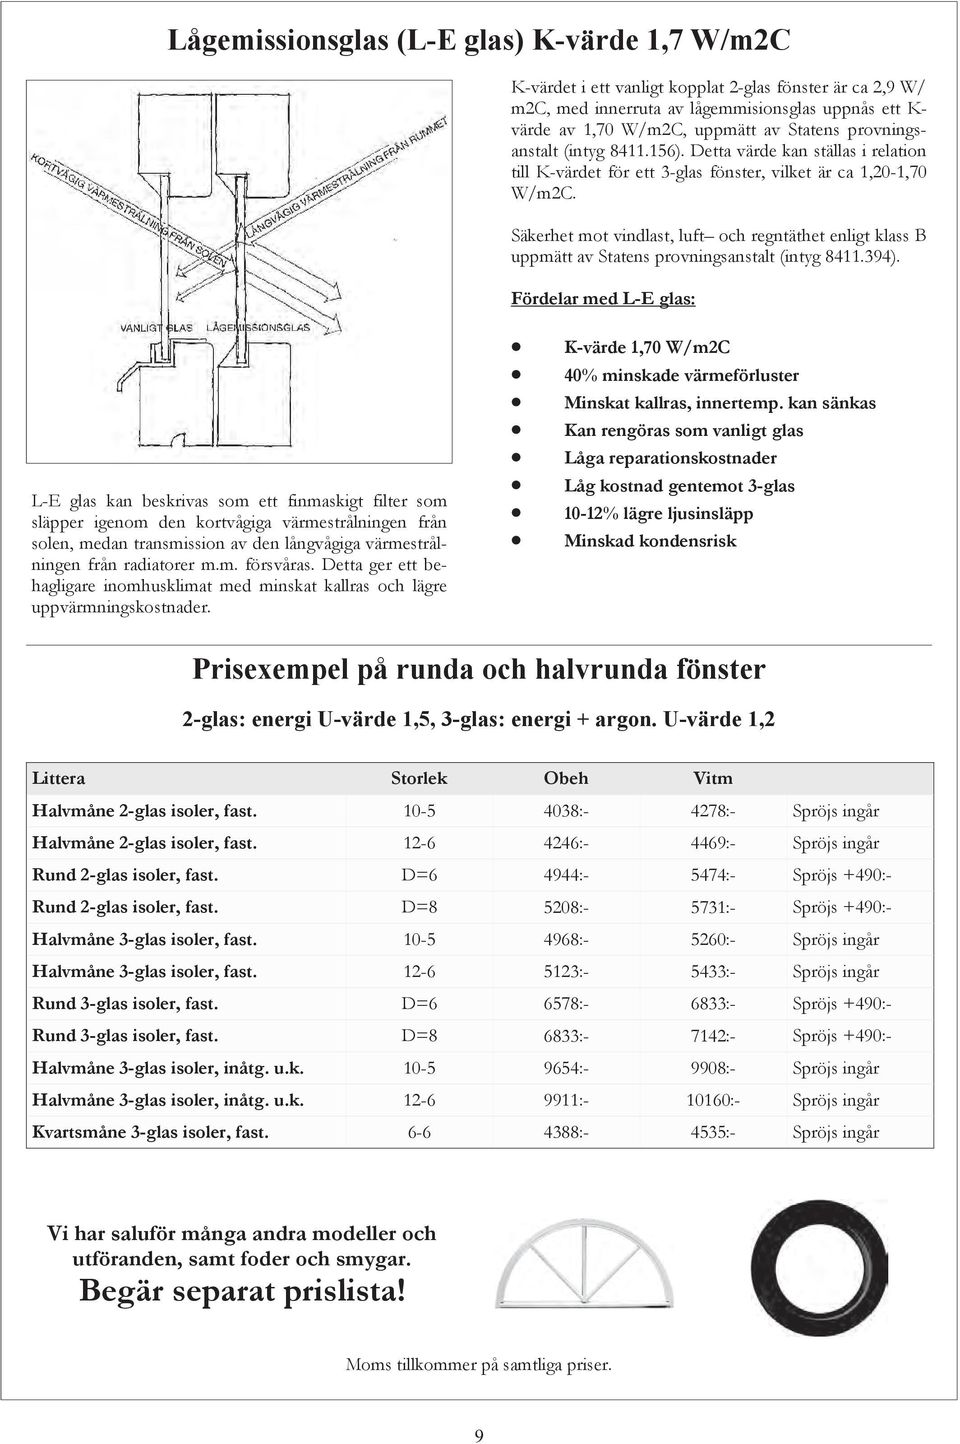 Säkerhet mot vindlast, luft och regntäthet enligt klass B uppmätt av Statens provningsanstalt (intyg 8411.394).